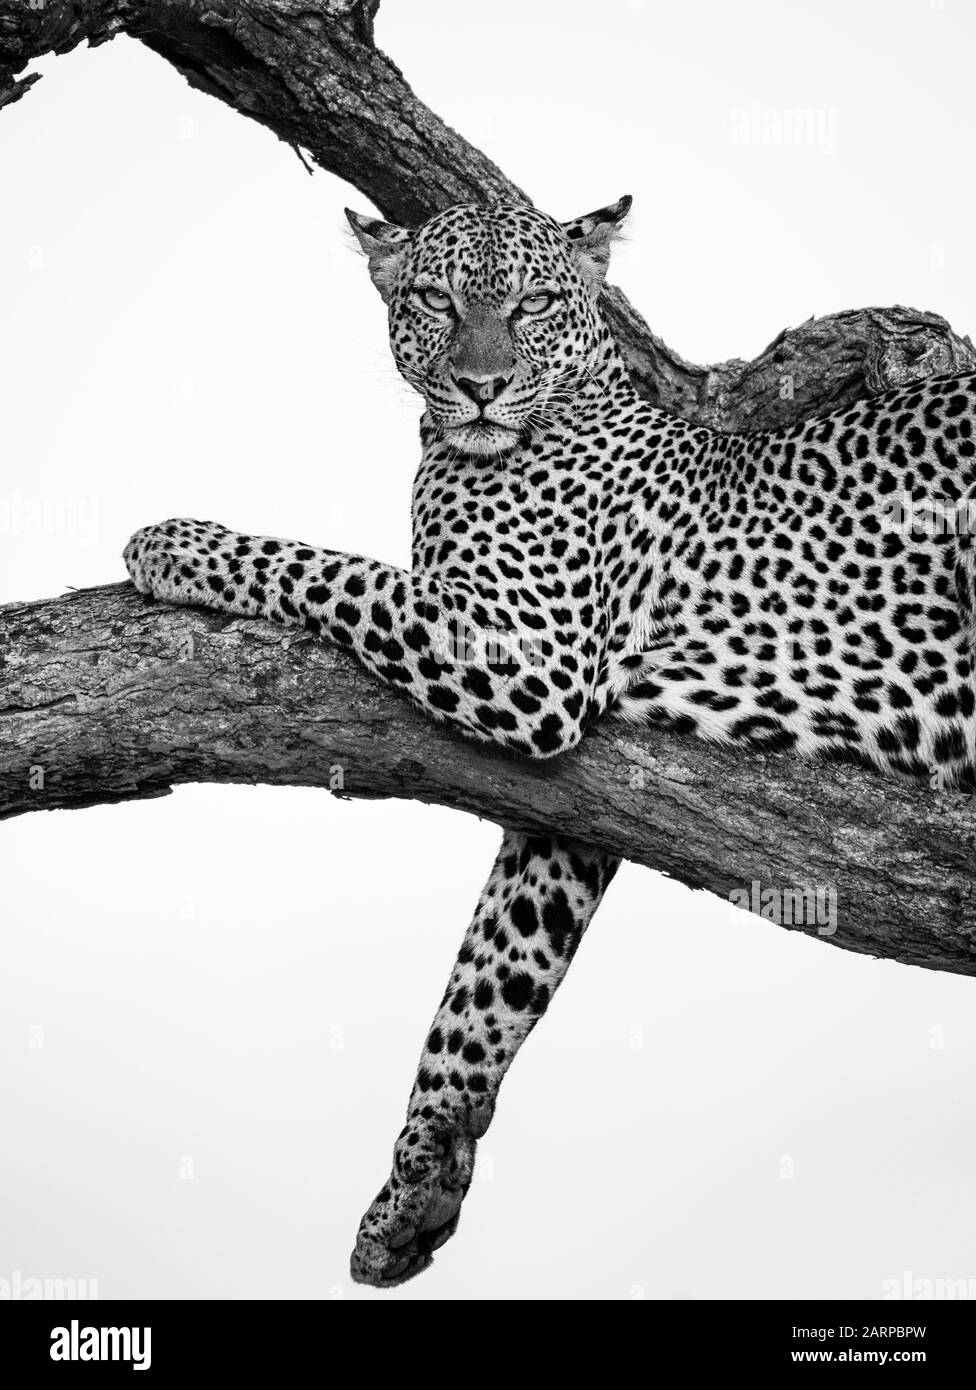 Imagen en blanco y negro del leopardo en árbol, Reserva Nacional Samburu, Kenya Foto de stock